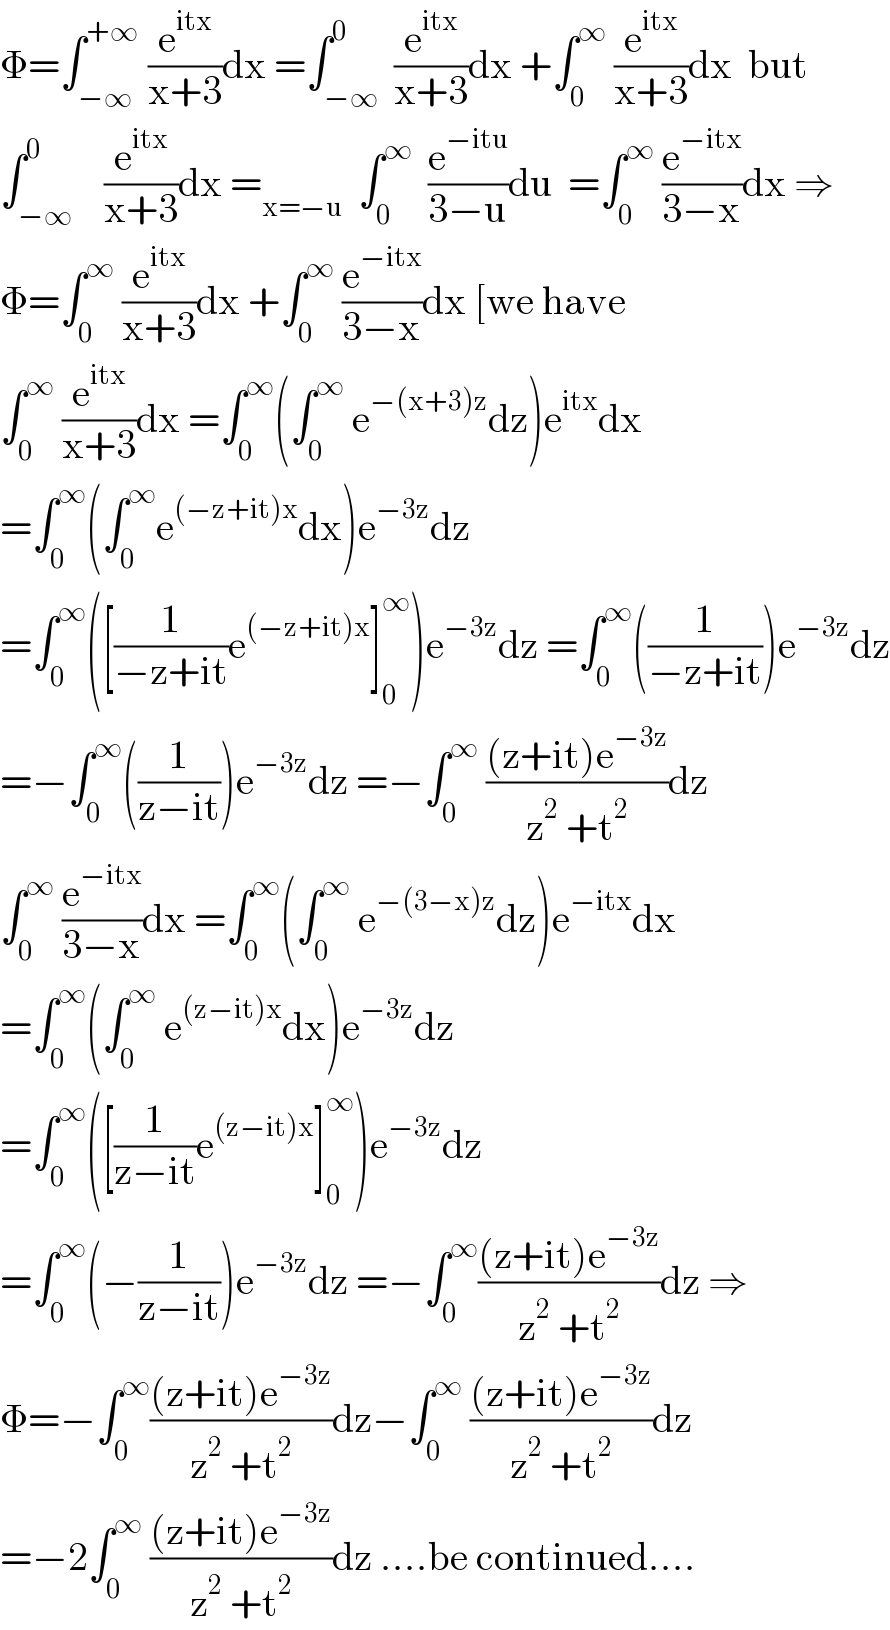 Φ=∫_(−∞) ^(+∞)  (e^(itx) /(x+3))dx =∫_(−∞) ^0  (e^(itx) /(x+3))dx +∫_0 ^∞  (e^(itx) /(x+3))dx  but  ∫_(−∞) ^0    (e^(itx) /(x+3))dx =_(x=−u)   ∫_0 ^∞   (e^(−itu) /(3−u))du  =∫_0 ^∞  (e^(−itx) /(3−x))dx ⇒  Φ=∫_0 ^∞  (e^(itx) /(x+3))dx +∫_0 ^∞  (e^(−itx) /(3−x))dx [we have  ∫_0 ^∞  (e^(itx) /(x+3))dx =∫_0 ^∞ (∫_0 ^∞  e^(−(x+3)z) dz)e^(itx) dx  =∫_0 ^∞ (∫_0 ^∞ e^((−z+it)x) dx)e^(−3z) dz  =∫_0 ^∞ ([(1/(−z+it))e^((−z+it)x) ]_0 ^∞ )e^(−3z) dz =∫_0 ^∞ ((1/(−z+it)))e^(−3z) dz  =−∫_0 ^∞ ((1/(z−it)))e^(−3z) dz =−∫_0 ^∞  (((z+it)e^(−3z) )/(z^2  +t^2 ))dz  ∫_0 ^∞  (e^(−itx) /(3−x))dx =∫_0 ^∞ (∫_0 ^∞  e^(−(3−x)z) dz)e^(−itx) dx  =∫_0 ^∞ (∫_0 ^∞  e^((z−it)x) dx)e^(−3z) dz  =∫_0 ^∞ ([(1/(z−it))e^((z−it)x) ]_0 ^∞ )e^(−3z) dz  =∫_0 ^∞ (−(1/(z−it)))e^(−3z) dz =−∫_0 ^∞ (((z+it)e^(−3z) )/(z^2  +t^2 ))dz ⇒  Φ=−∫_0 ^∞ (((z+it)e^(−3z) )/(z^2  +t^2 ))dz−∫_0 ^∞  (((z+it)e^(−3z) )/(z^2  +t^2 ))dz  =−2∫_0 ^∞  (((z+it)e^(−3z) )/(z^2  +t^2 ))dz ....be continued....  